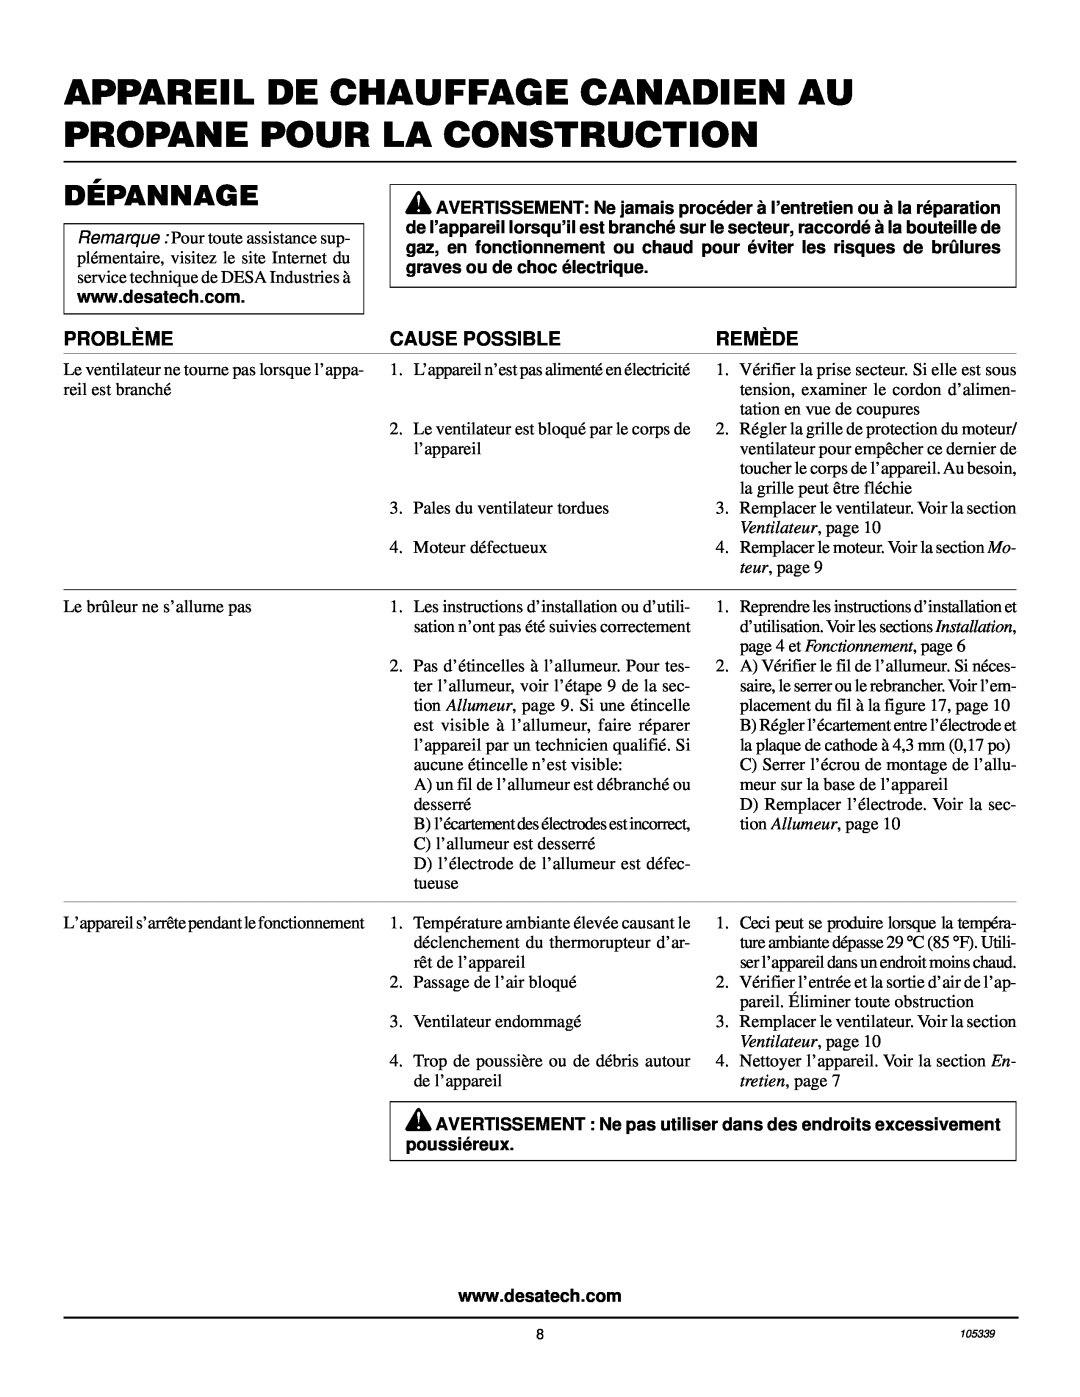 Desa RCLP50VA owner manual Dépannage, Problème, Cause Possible, Remède, Ventilateur, page 